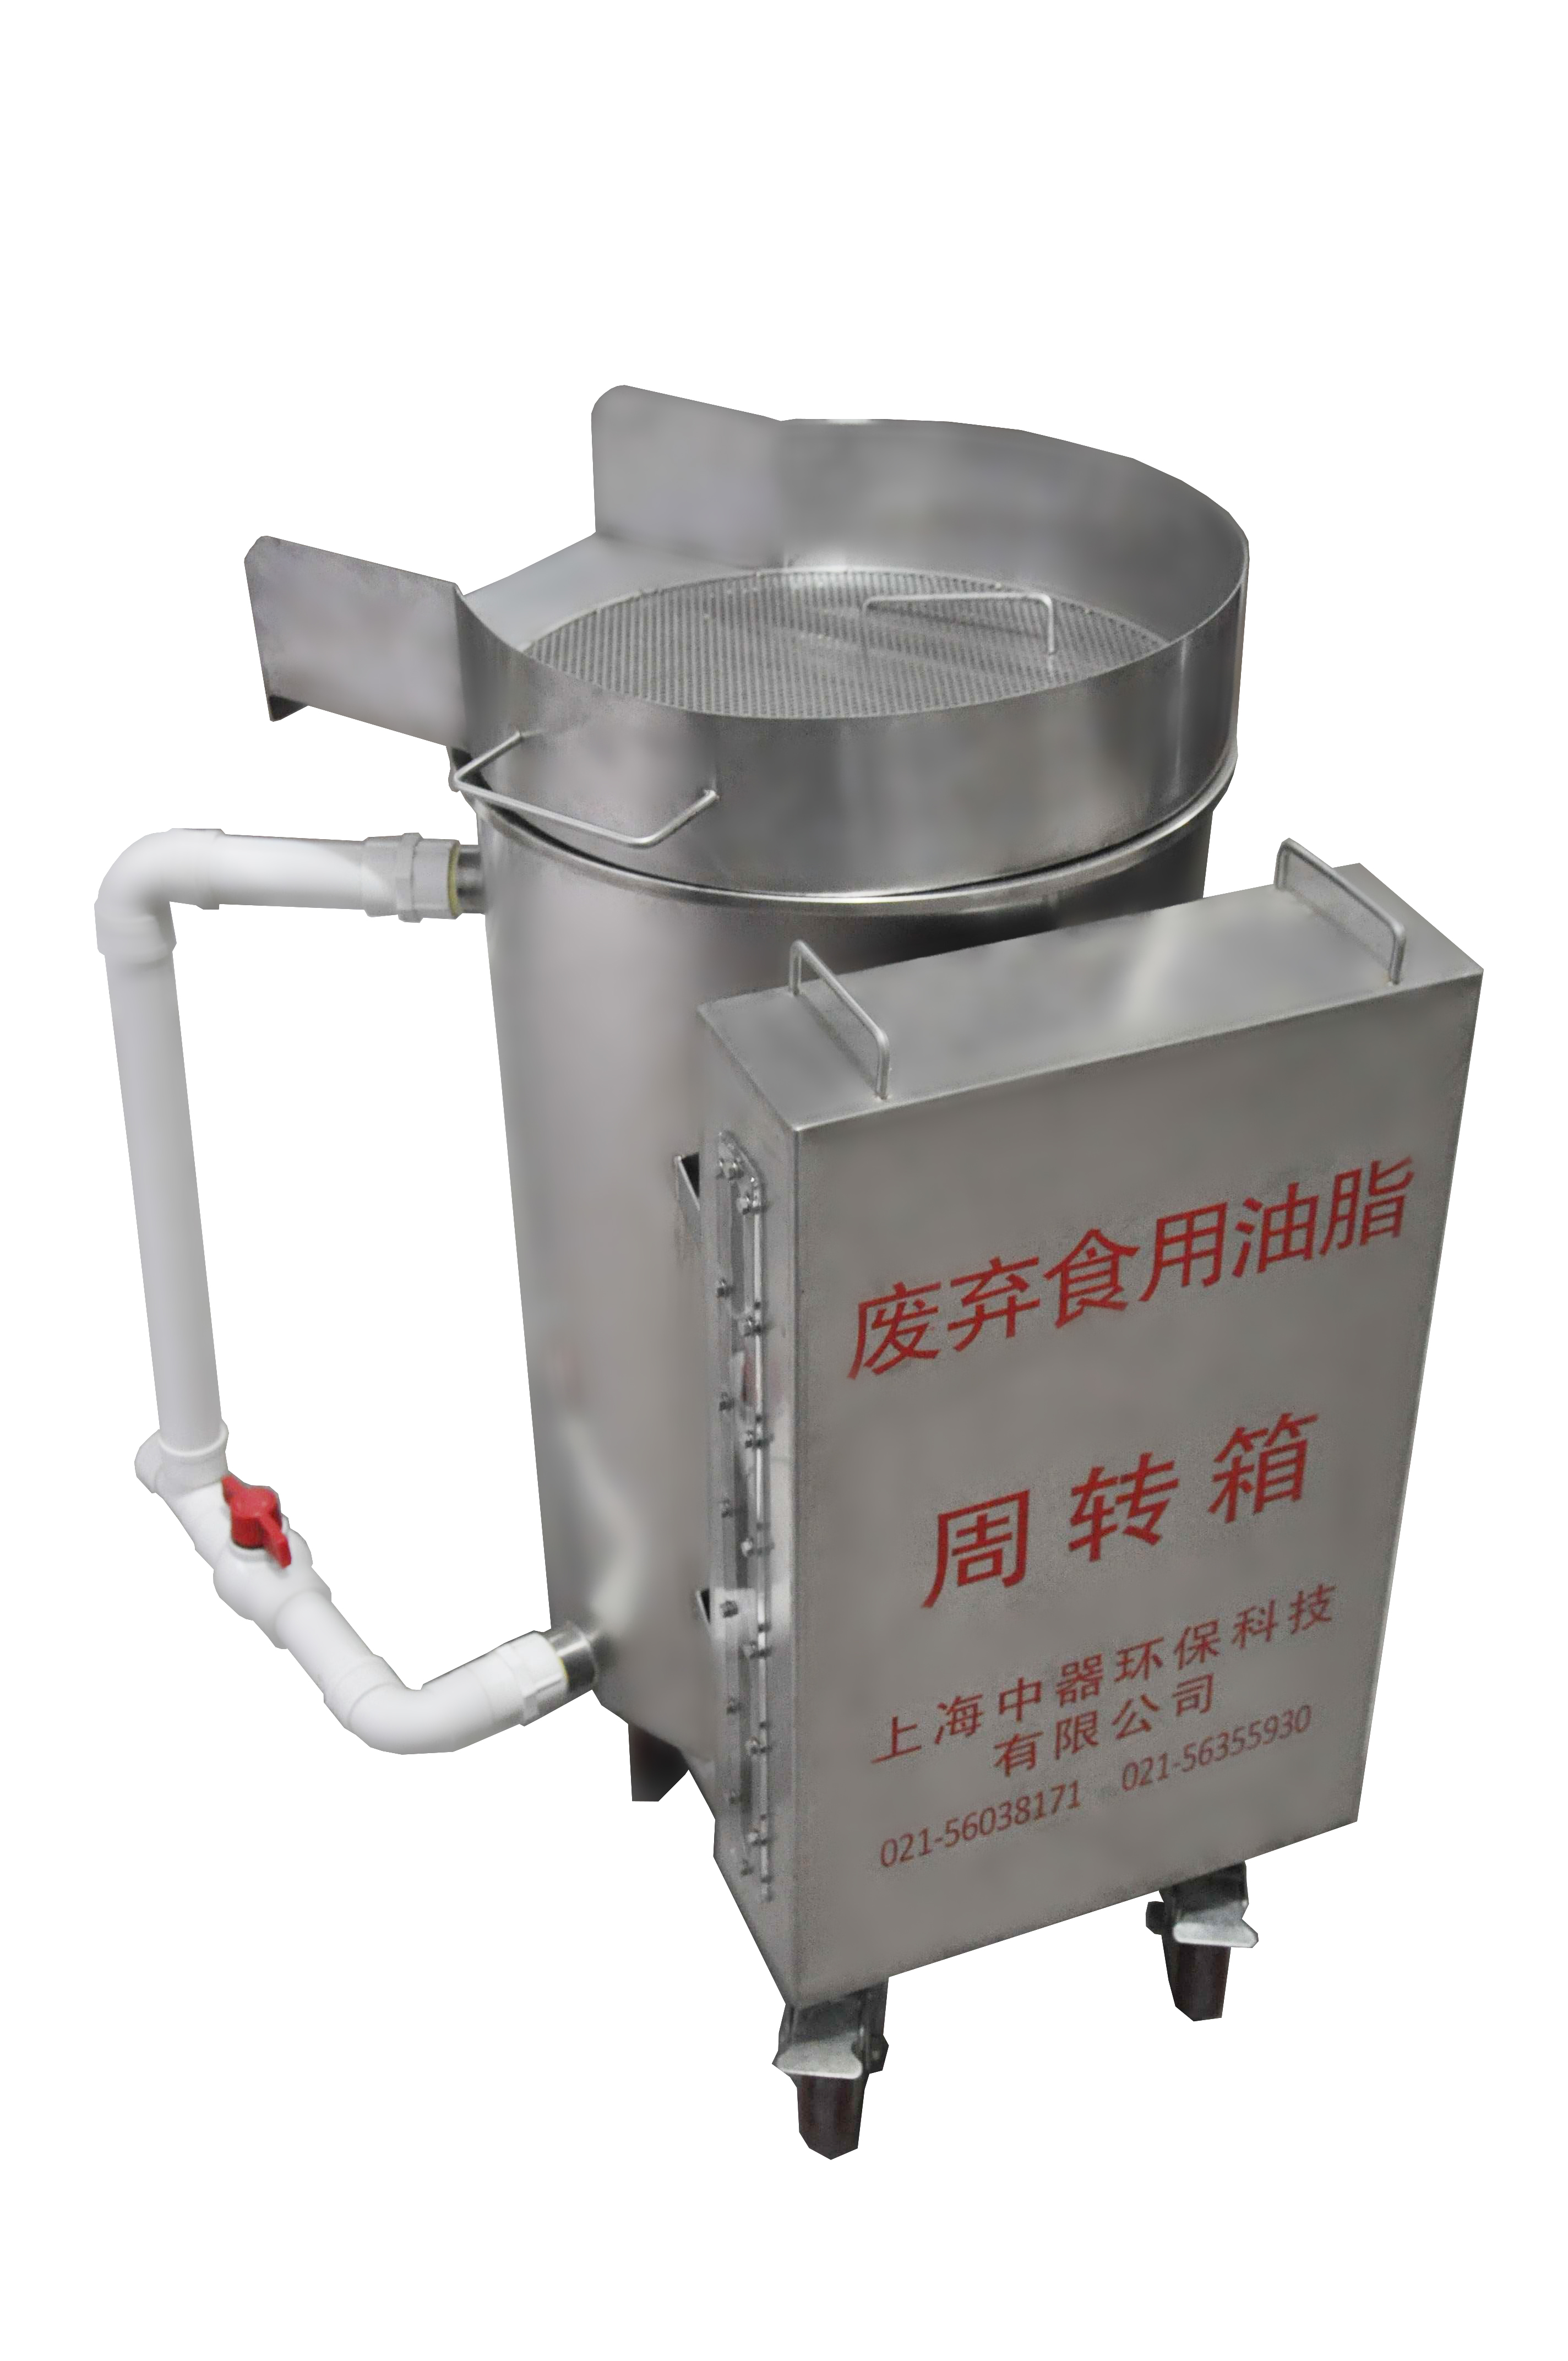 上海手推车型移动油水分离器、指定换证名单产品、油水分离低价格图片